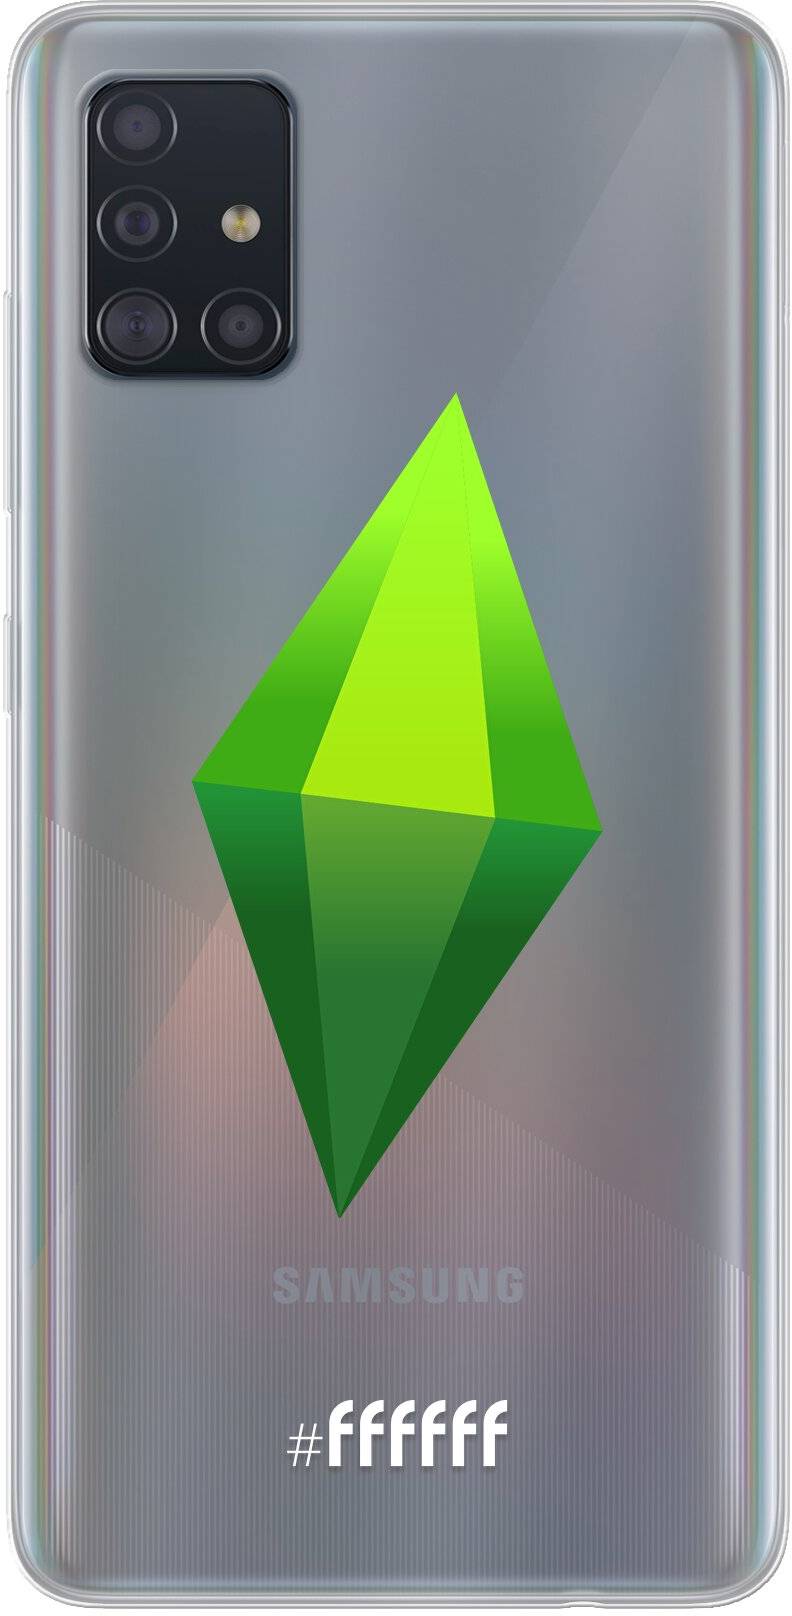 The Sims Galaxy A51